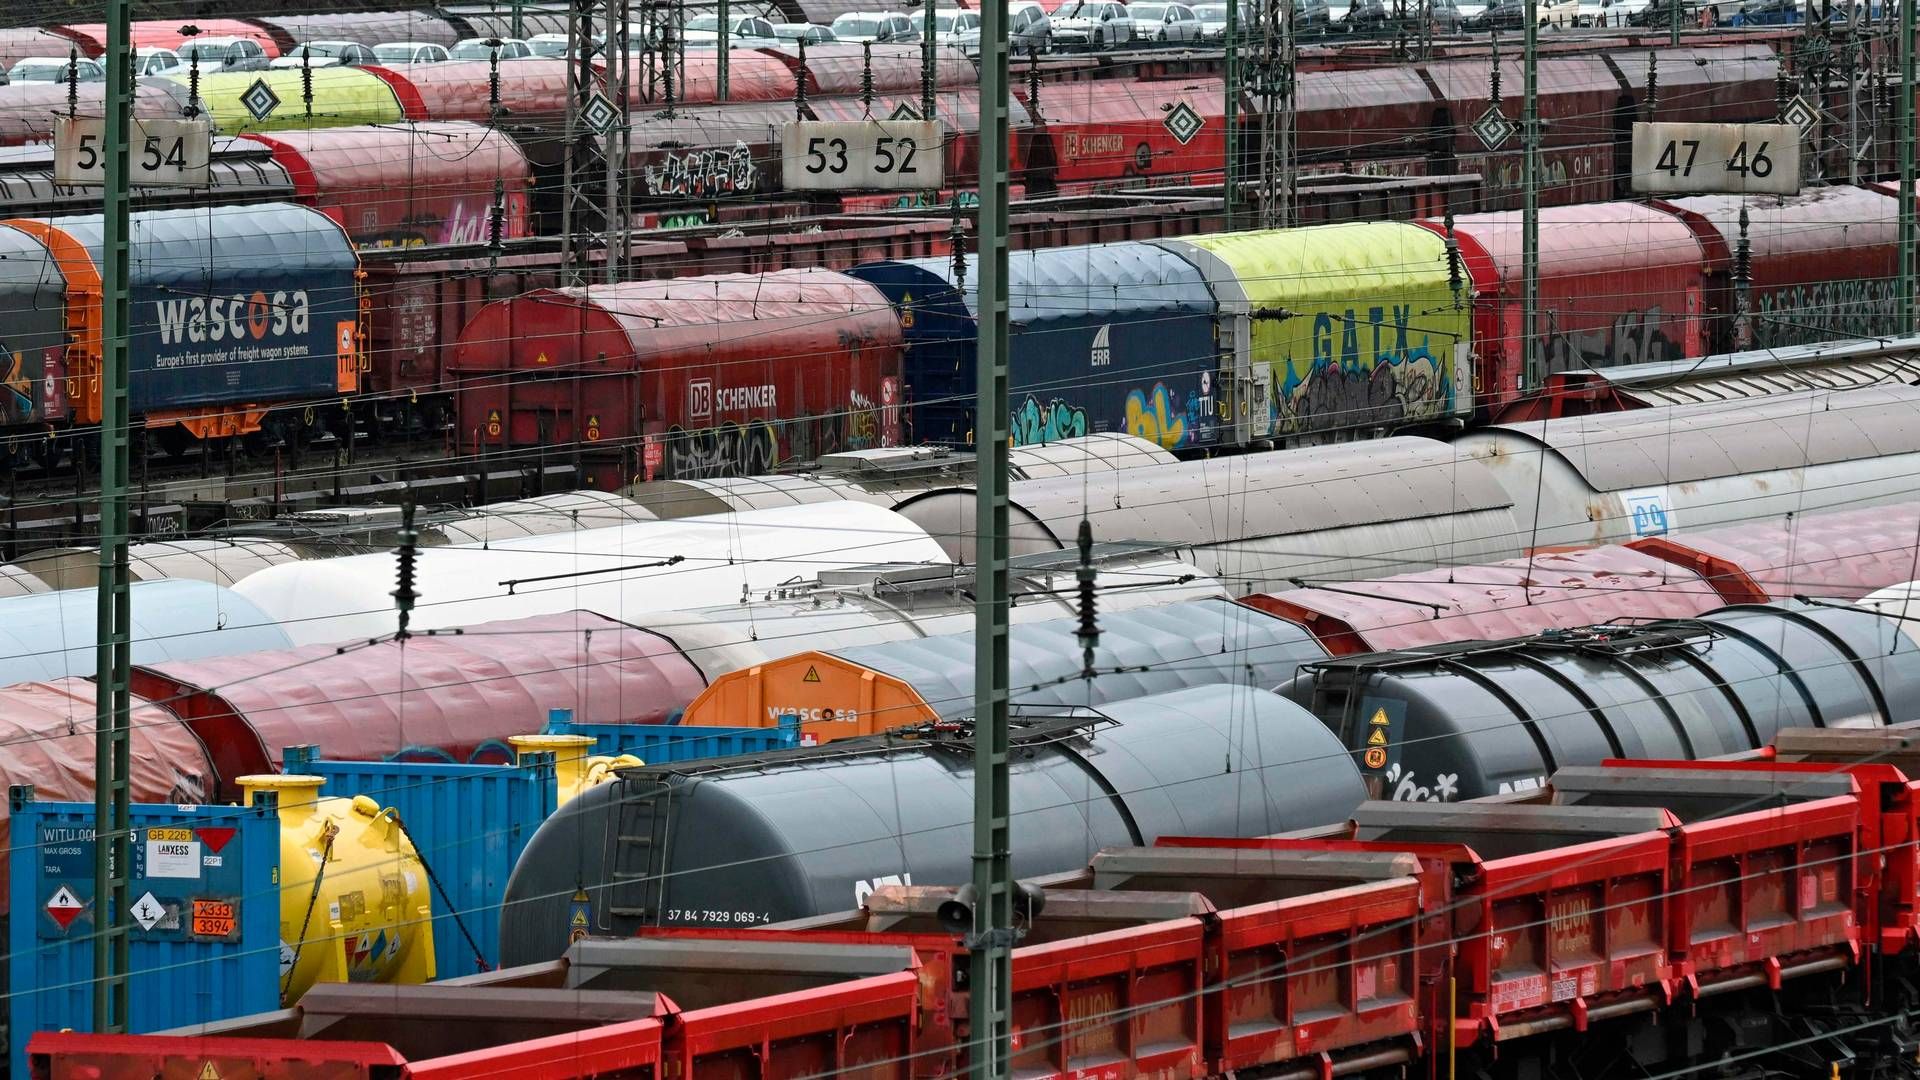 Lokomotivførernes seneste strejke kan flytte mere gods væk fra jernbanerne, siger chef fra operatøren Kombiverkehr. | Foto: Ina Fassbender/AFP/Ritzau Scanpix